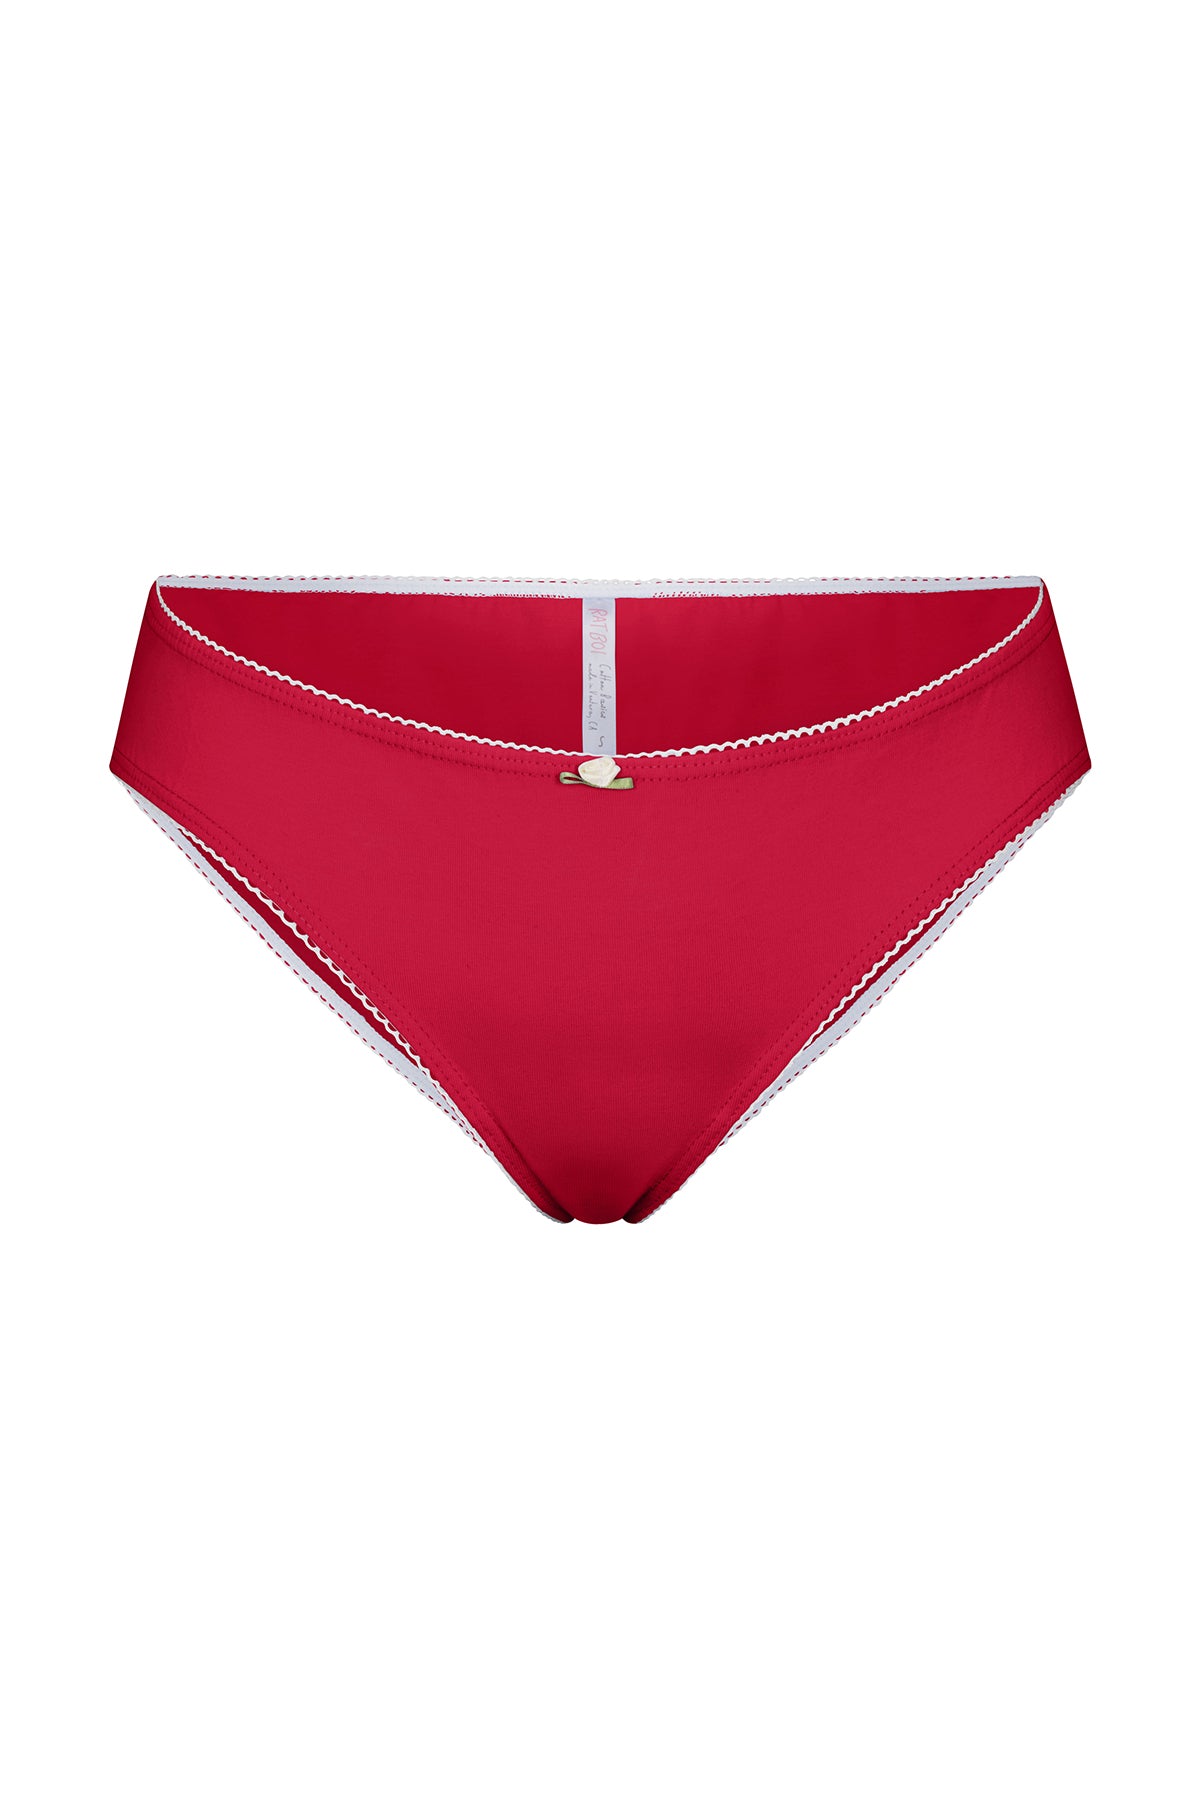 Cotton Panties Comfy Underwear Women Low Waist Briefs Female Underpants  Lingerie Ladies Pantys M-XL Cherry